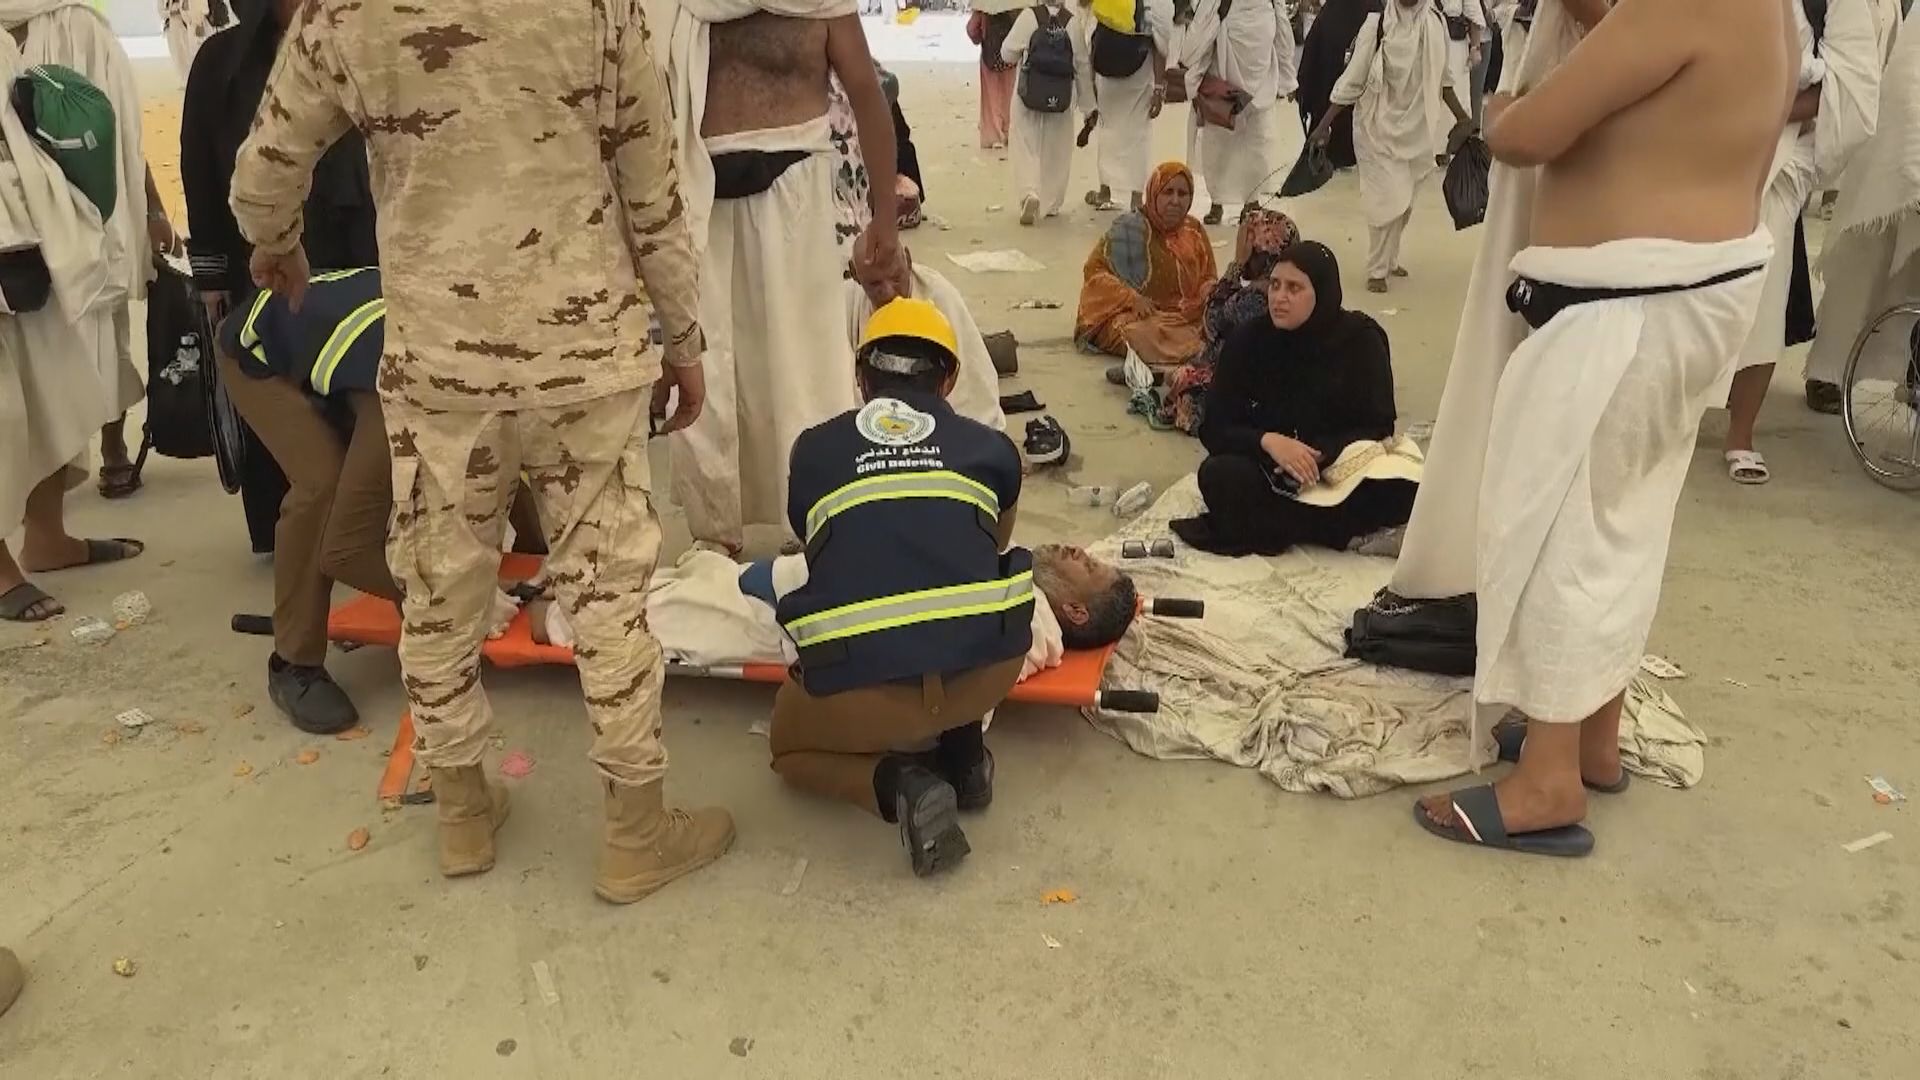 沙特朝聖活動逾千人熱死 埃及起訴16間旅行社及吊銷牌照